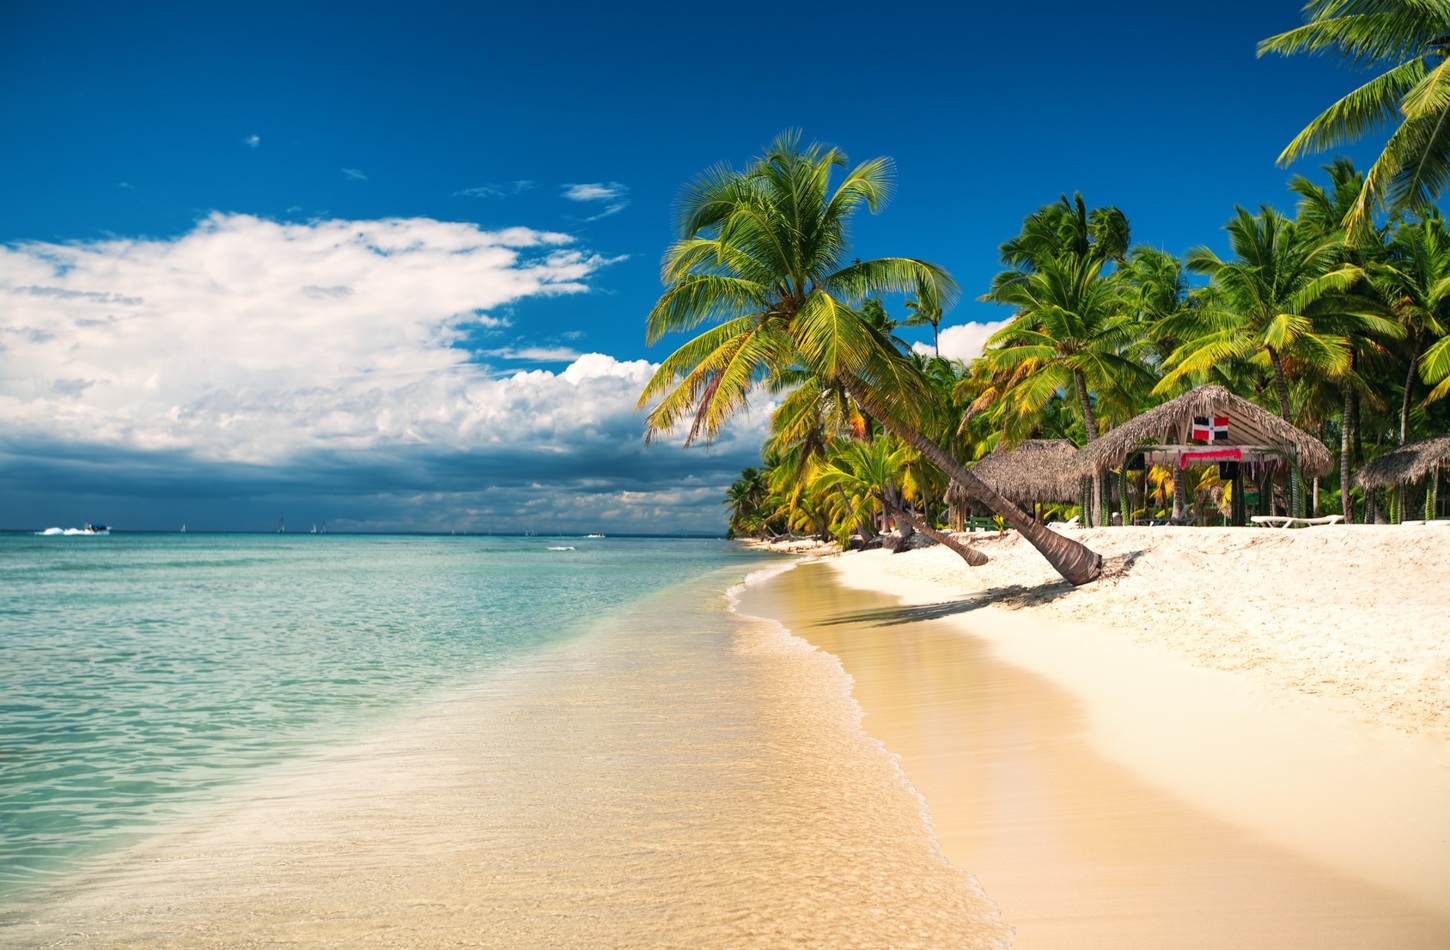 Plage magnifique de sable blanc et eau transparente avec des palmiers et un centre de kitesurf en république dominicaine